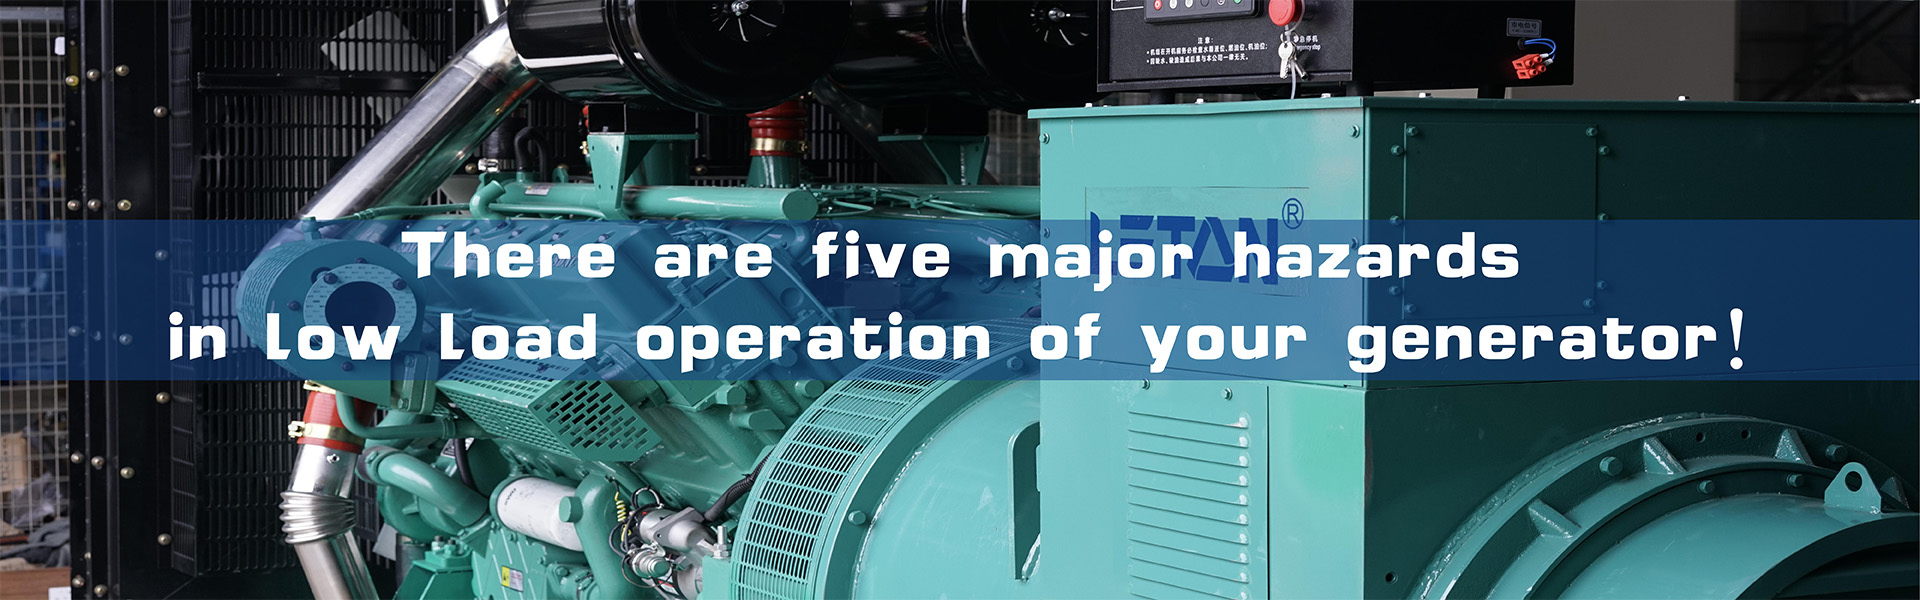 Det finns fem stora faror vid lågbelastningsdrift av dieselgeneratorer